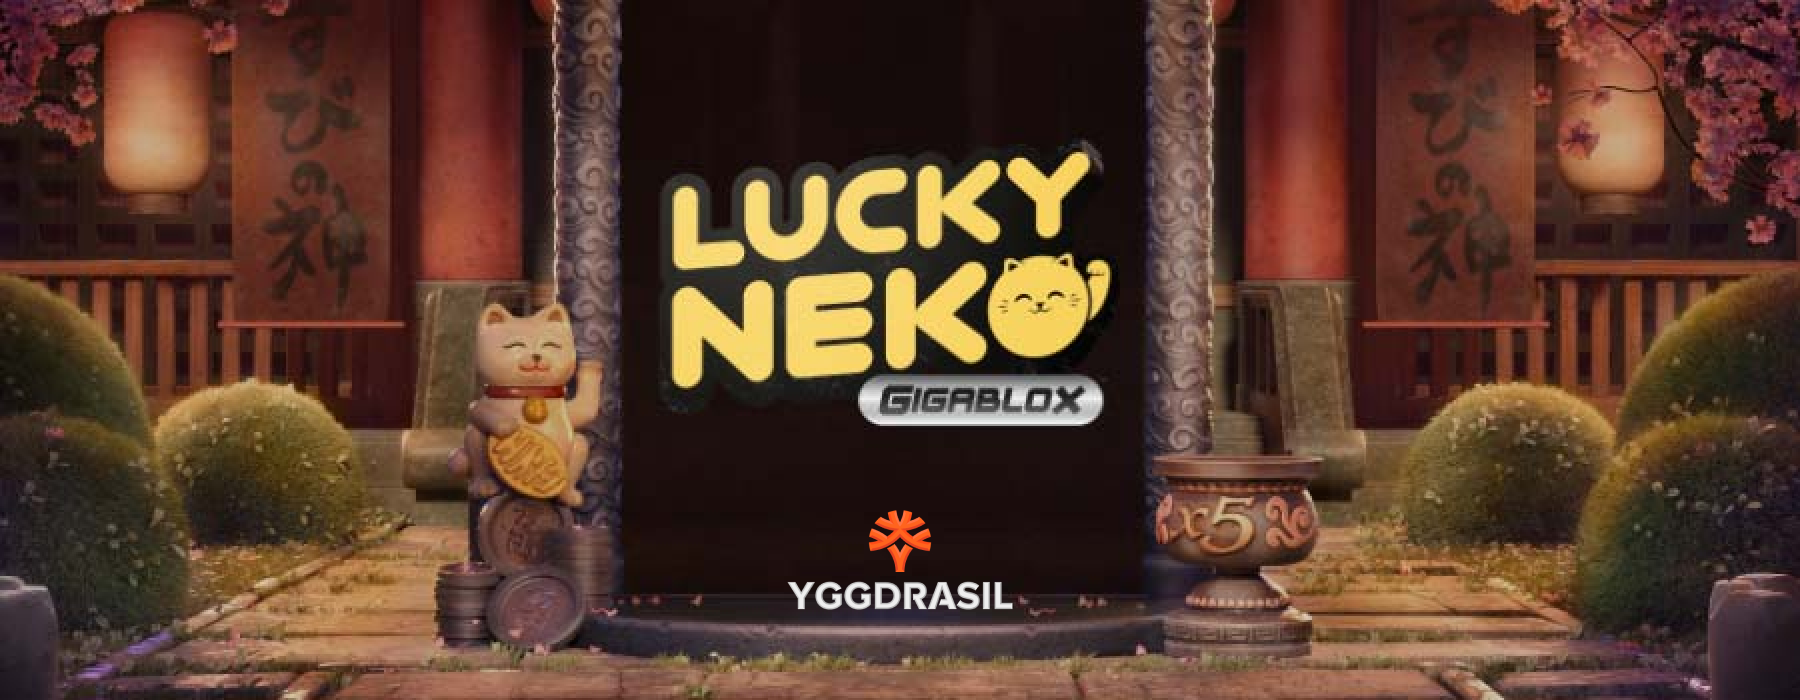 Lucky Neko Gigablox โดย Yggdrasil